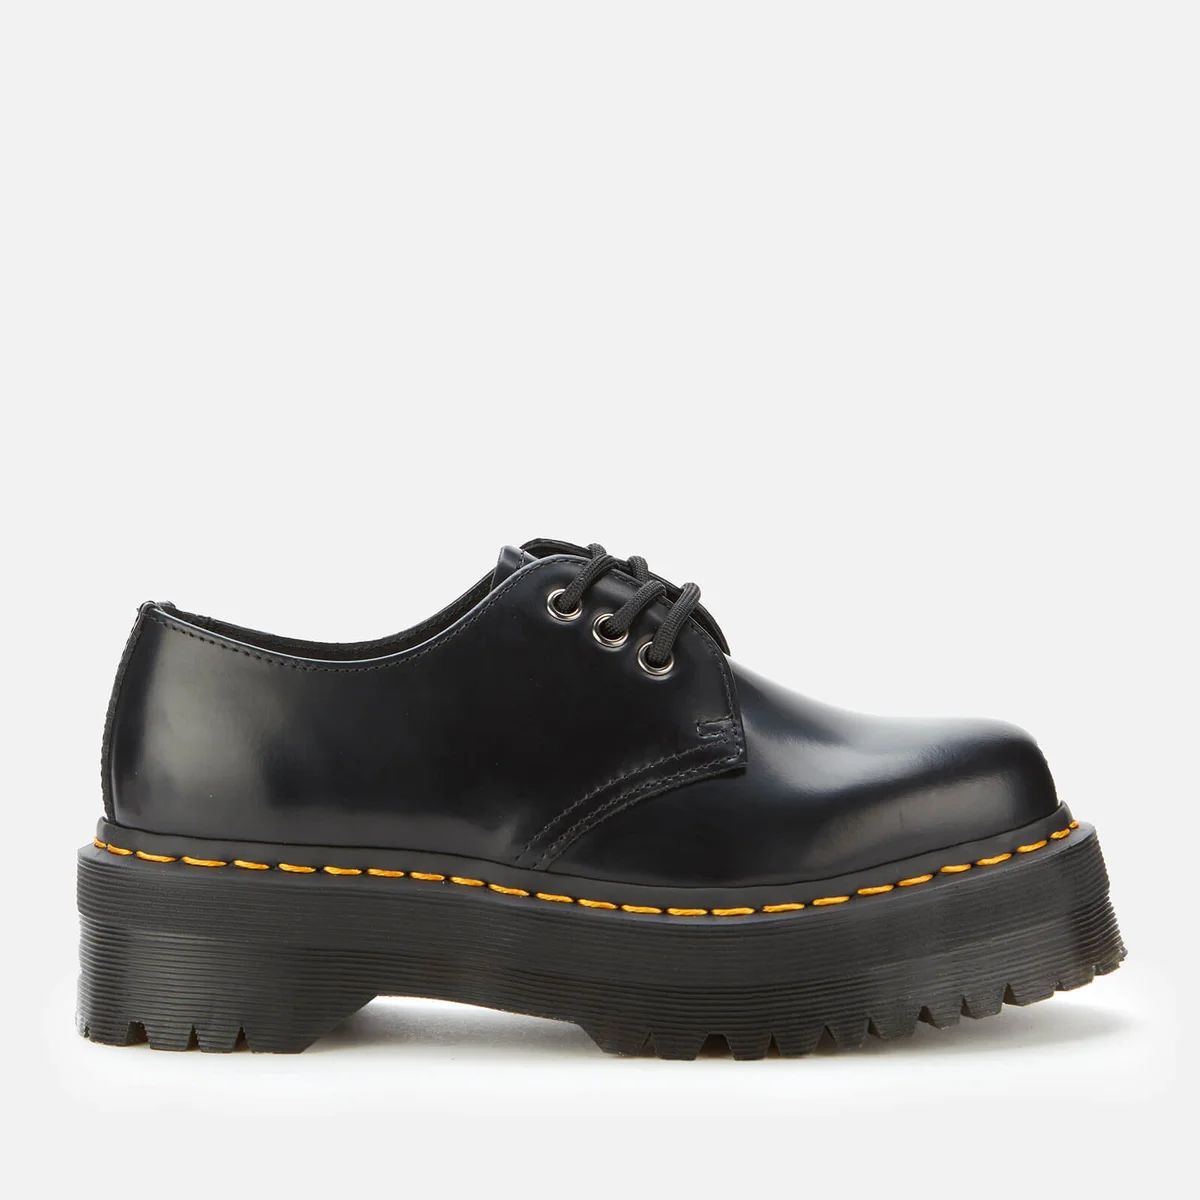 Dr. Martens 1461 Quad Leather 3-Eye Shoes - Black Image 1